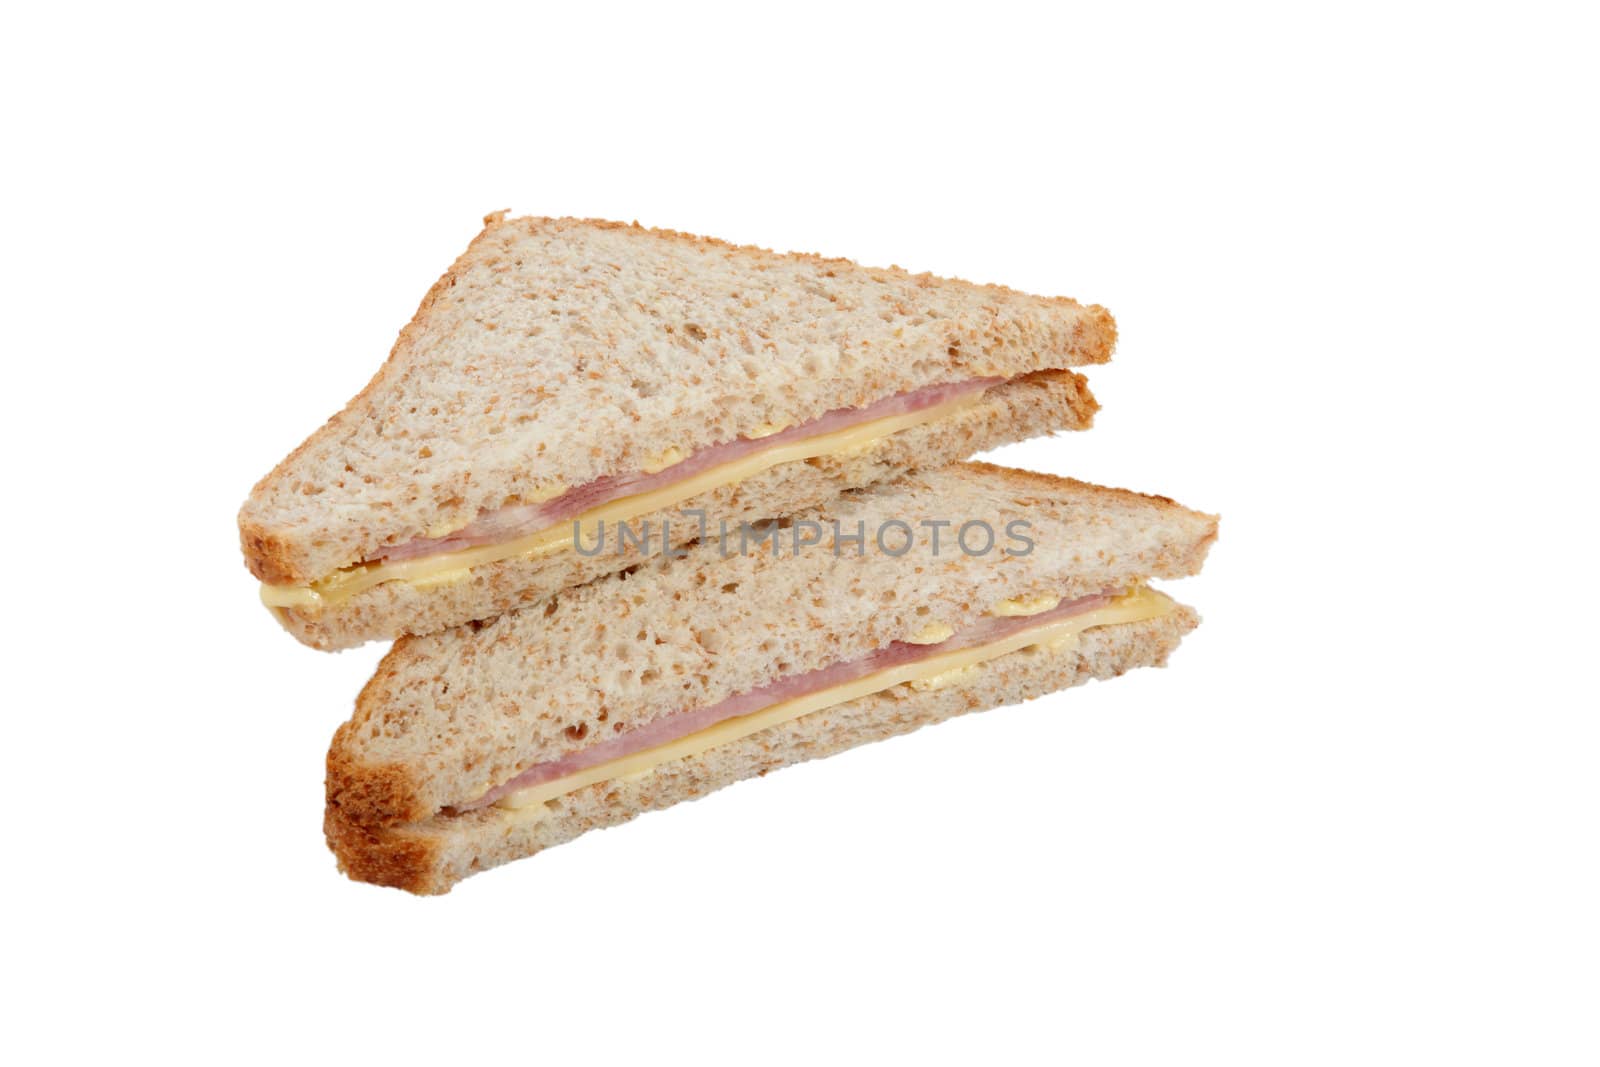 Square ham sandwich by phovoir